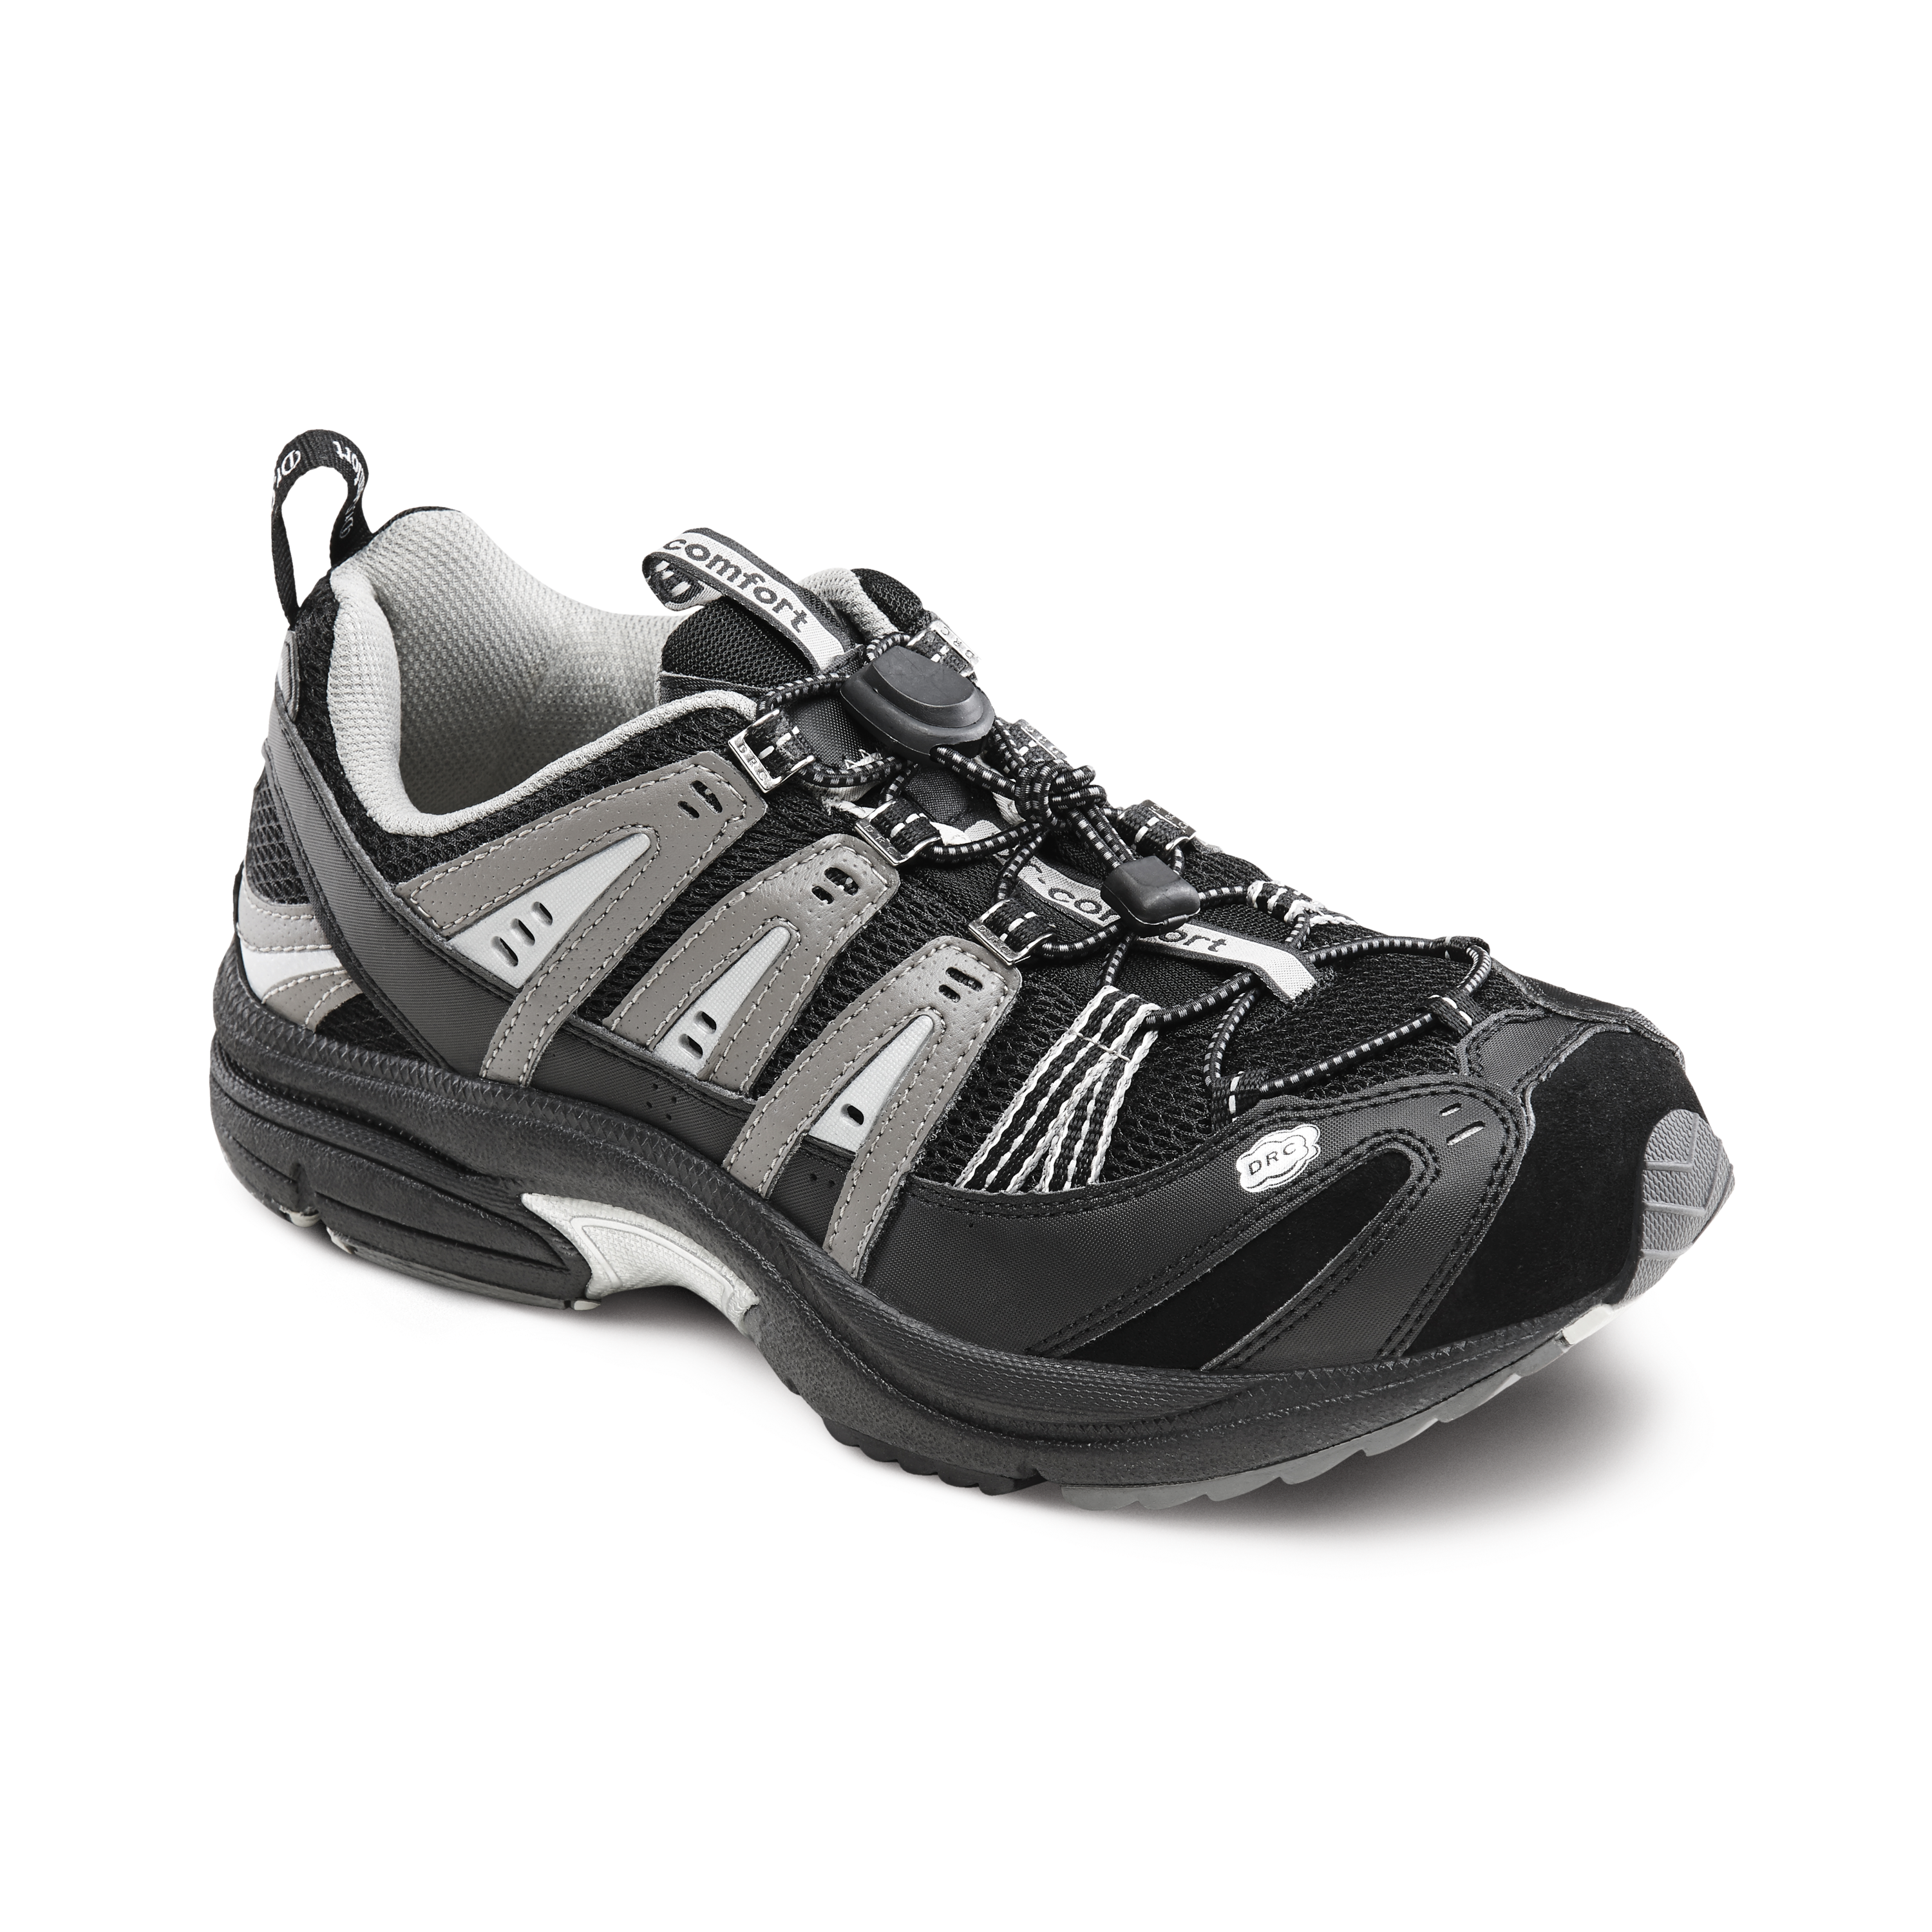 Produktbild DR. COMFORT® Performance-X schwarz, Orthopädische Schuhe, Leichter und komfortabler Freizeitschuh mit enorm viel Volumen